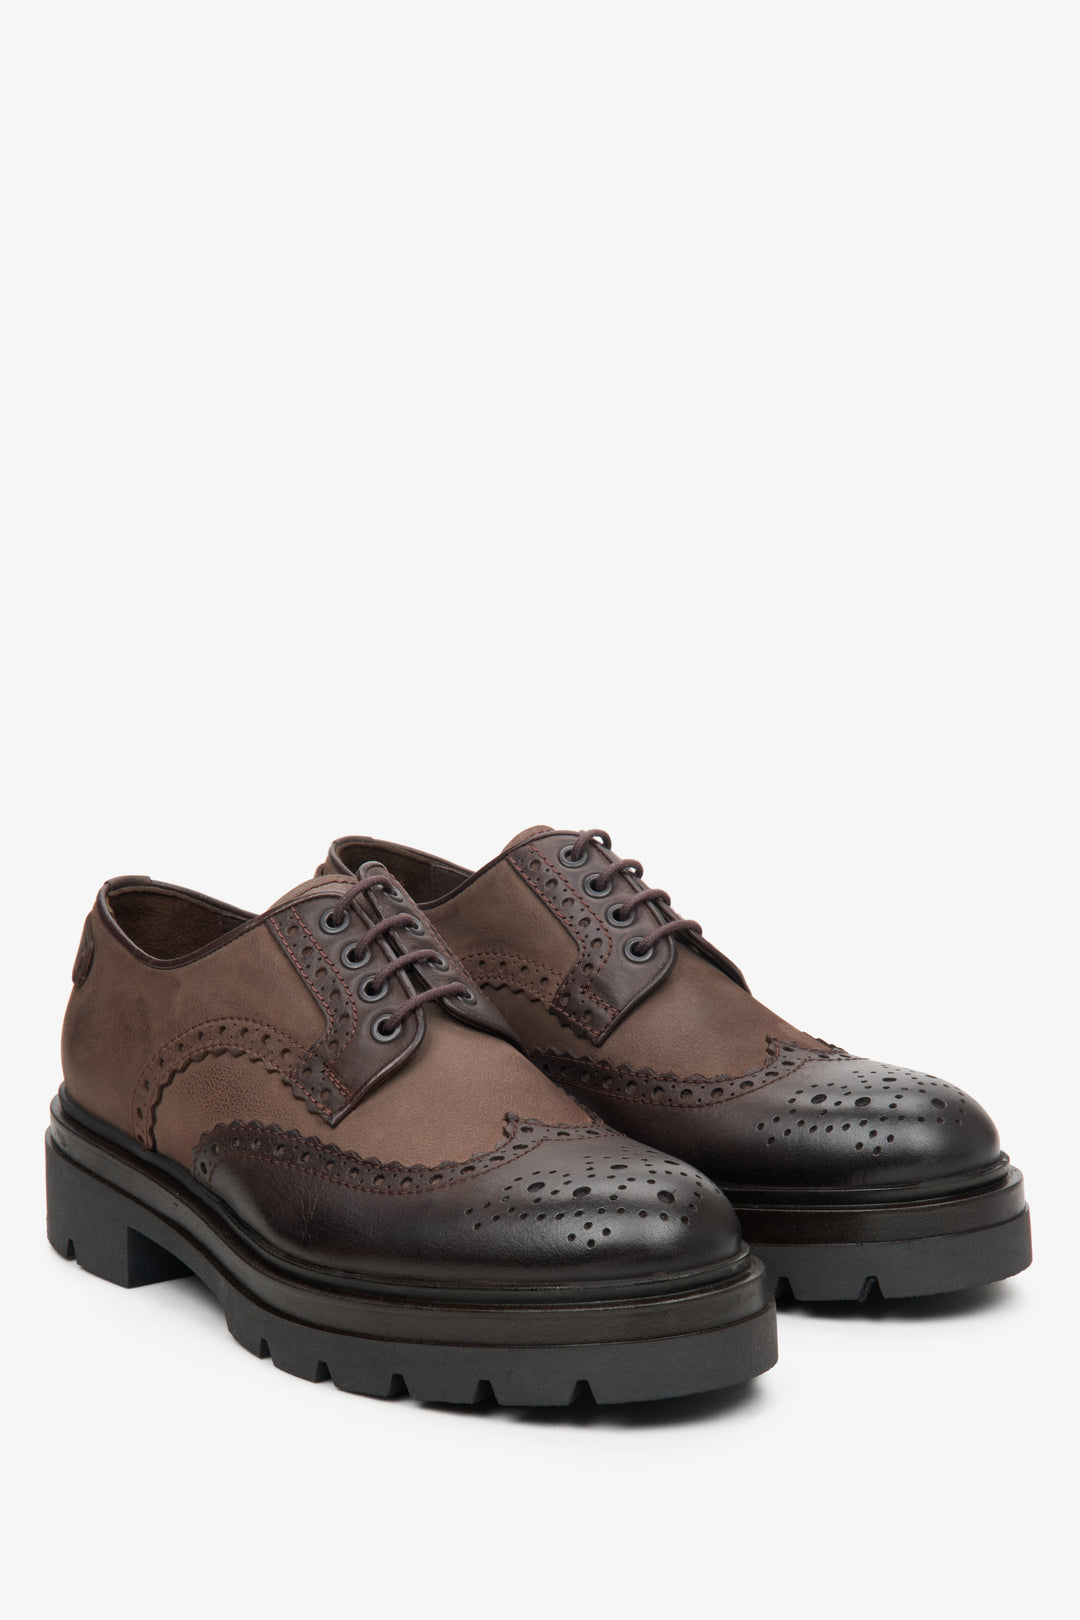 Men's brown lace-up shoes by Estro.Brown lace-up men's shoes by Estro.